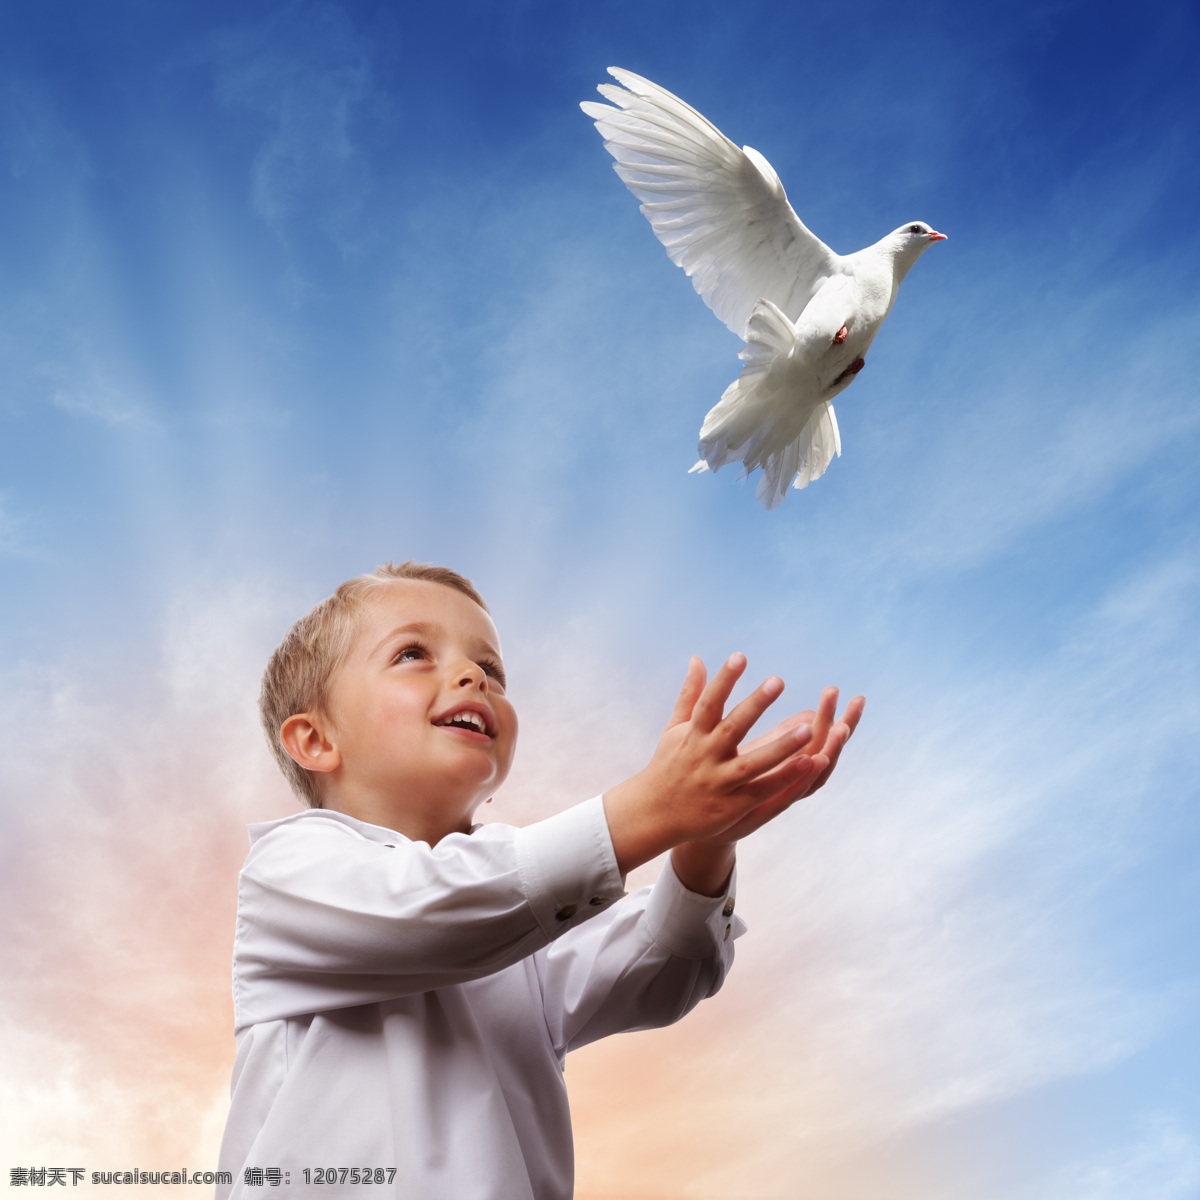 小 男孩 放飞 鸽子 小男孩 空中 天空 飞翔 白鸽 信鸽 小鸟 鸟类 空中飞鸟 生物世界 蓝色